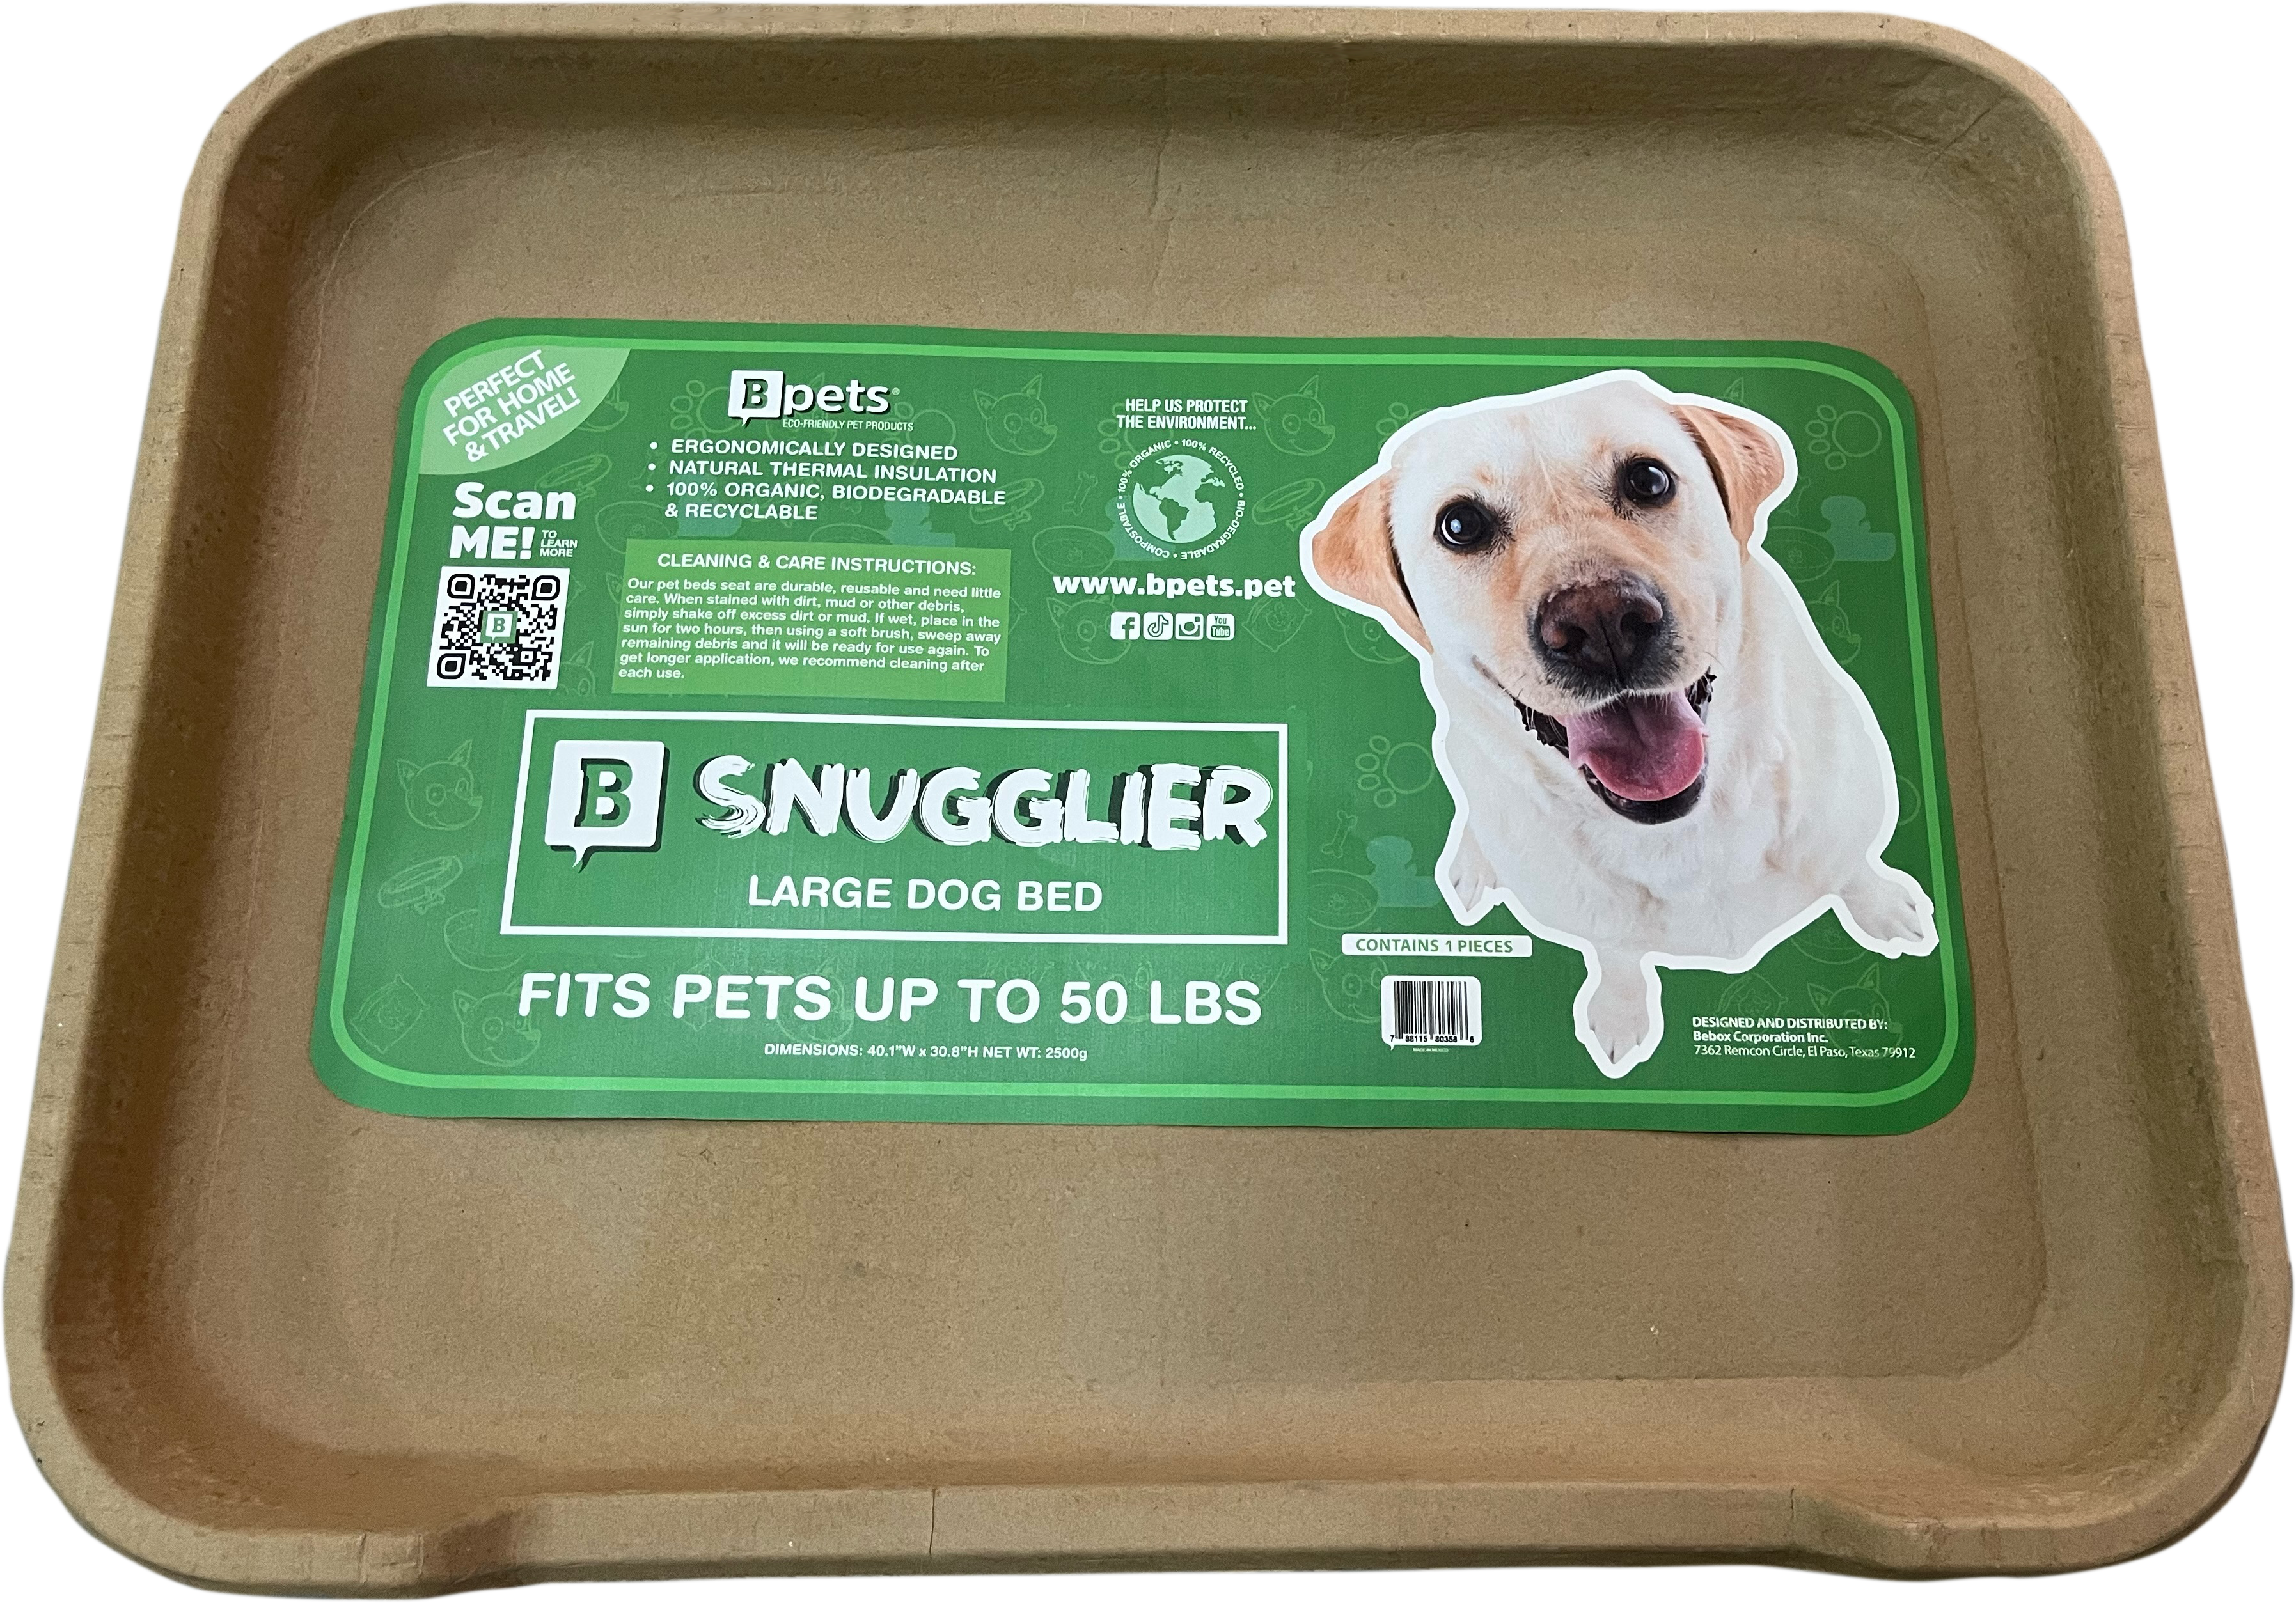 B Snugglier - Large Dog Bed, Biodegradable, Cardboard